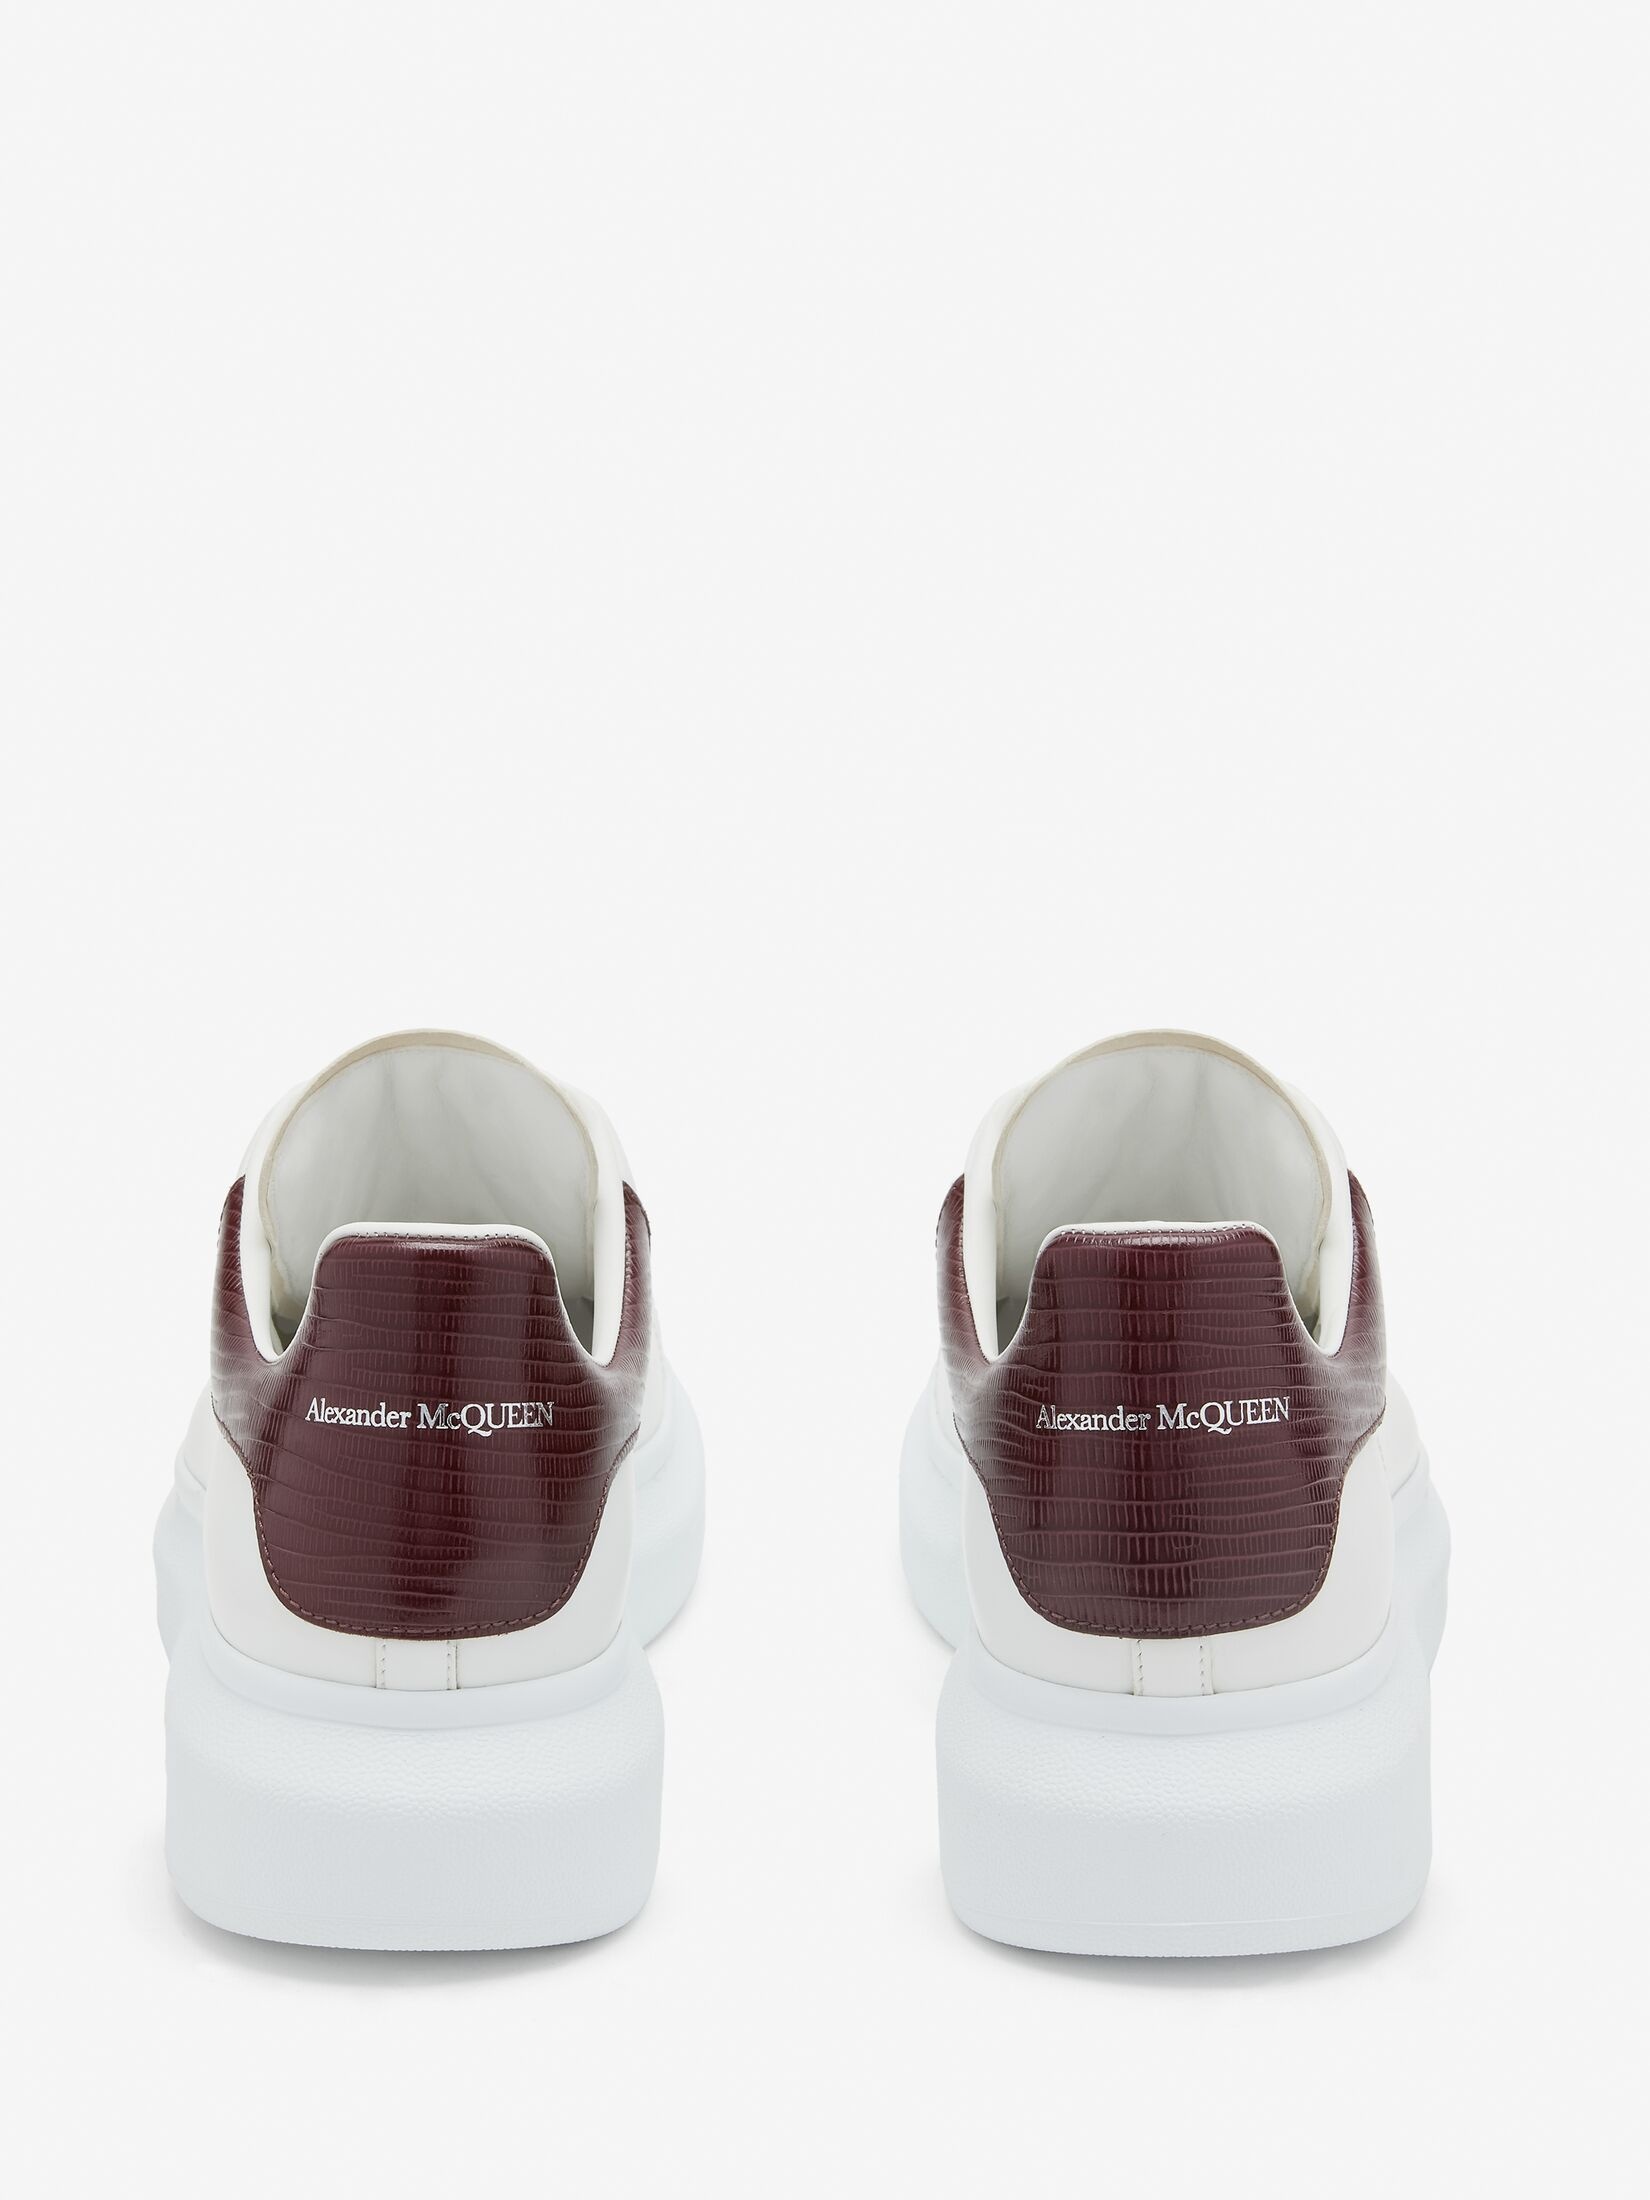 Men's Oversized Sneaker in White/burgundy - 3